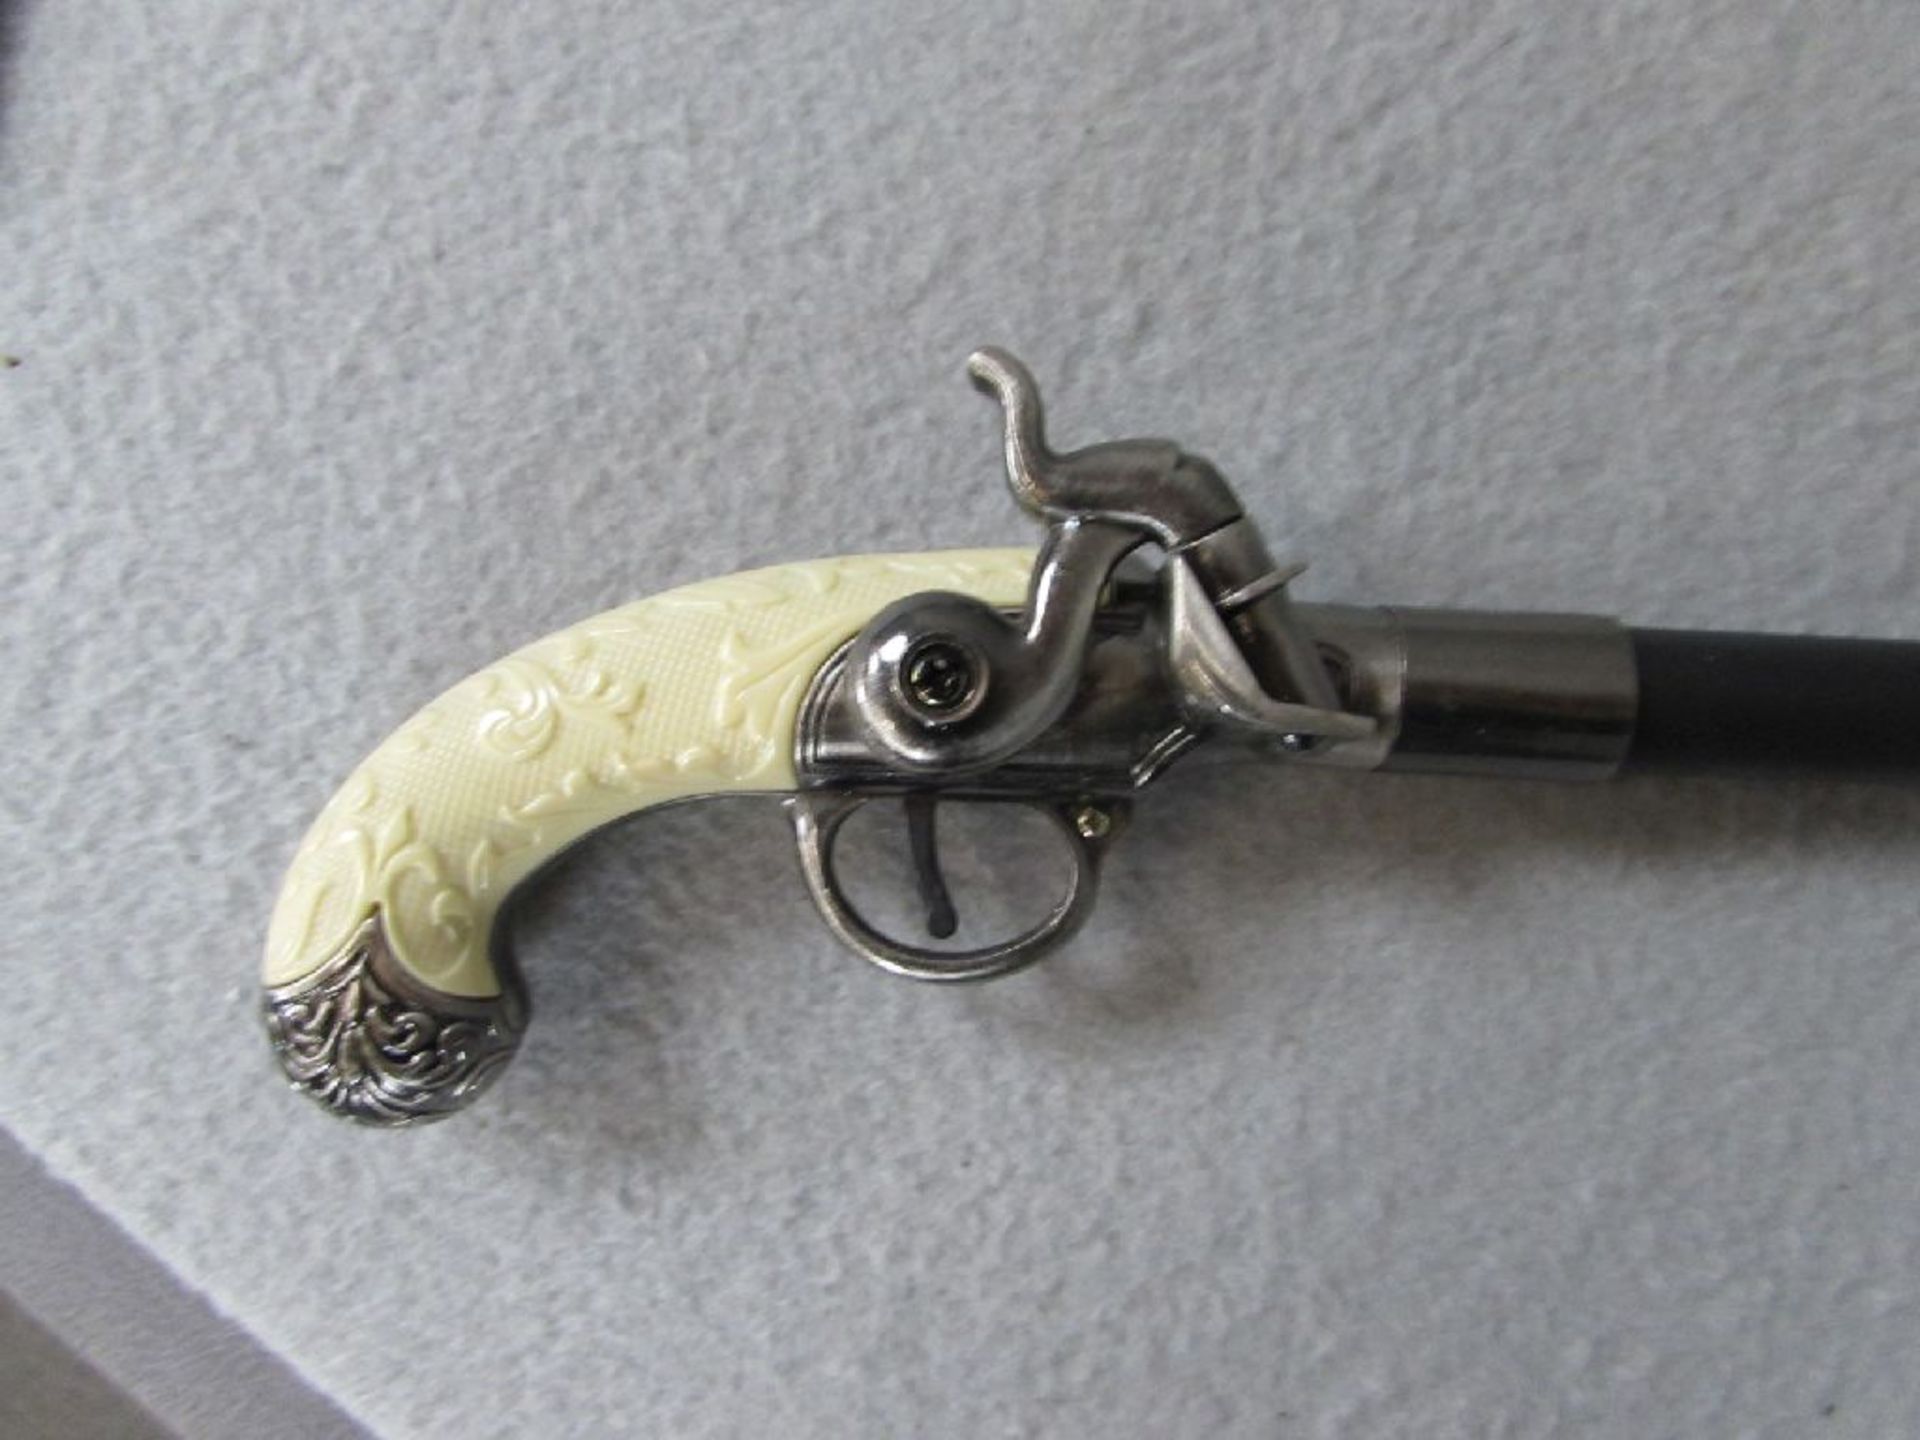 Spazierstock griff in Pistolenform Metall zerlegbar 91cm höhe - Image 2 of 2